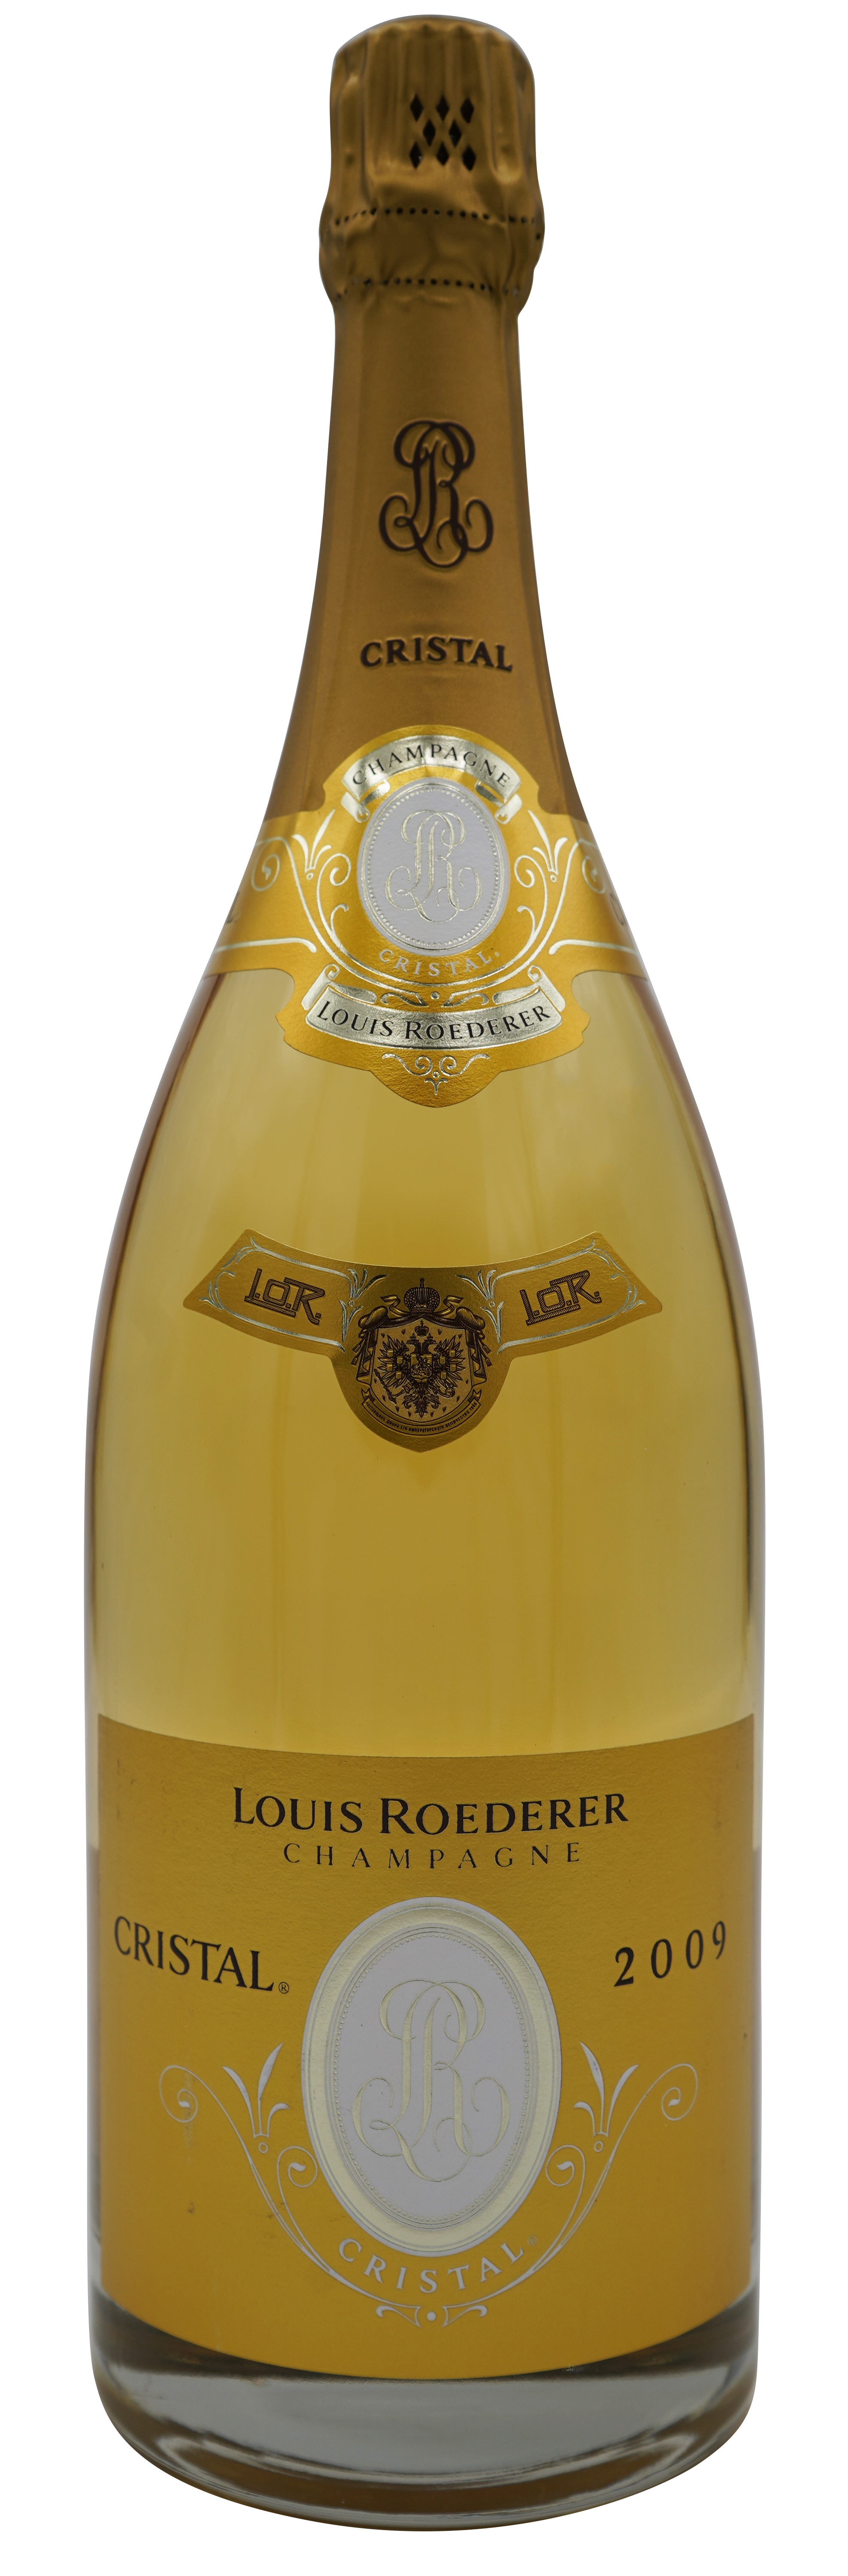 Louis Roederer Champagner Cristal 2009